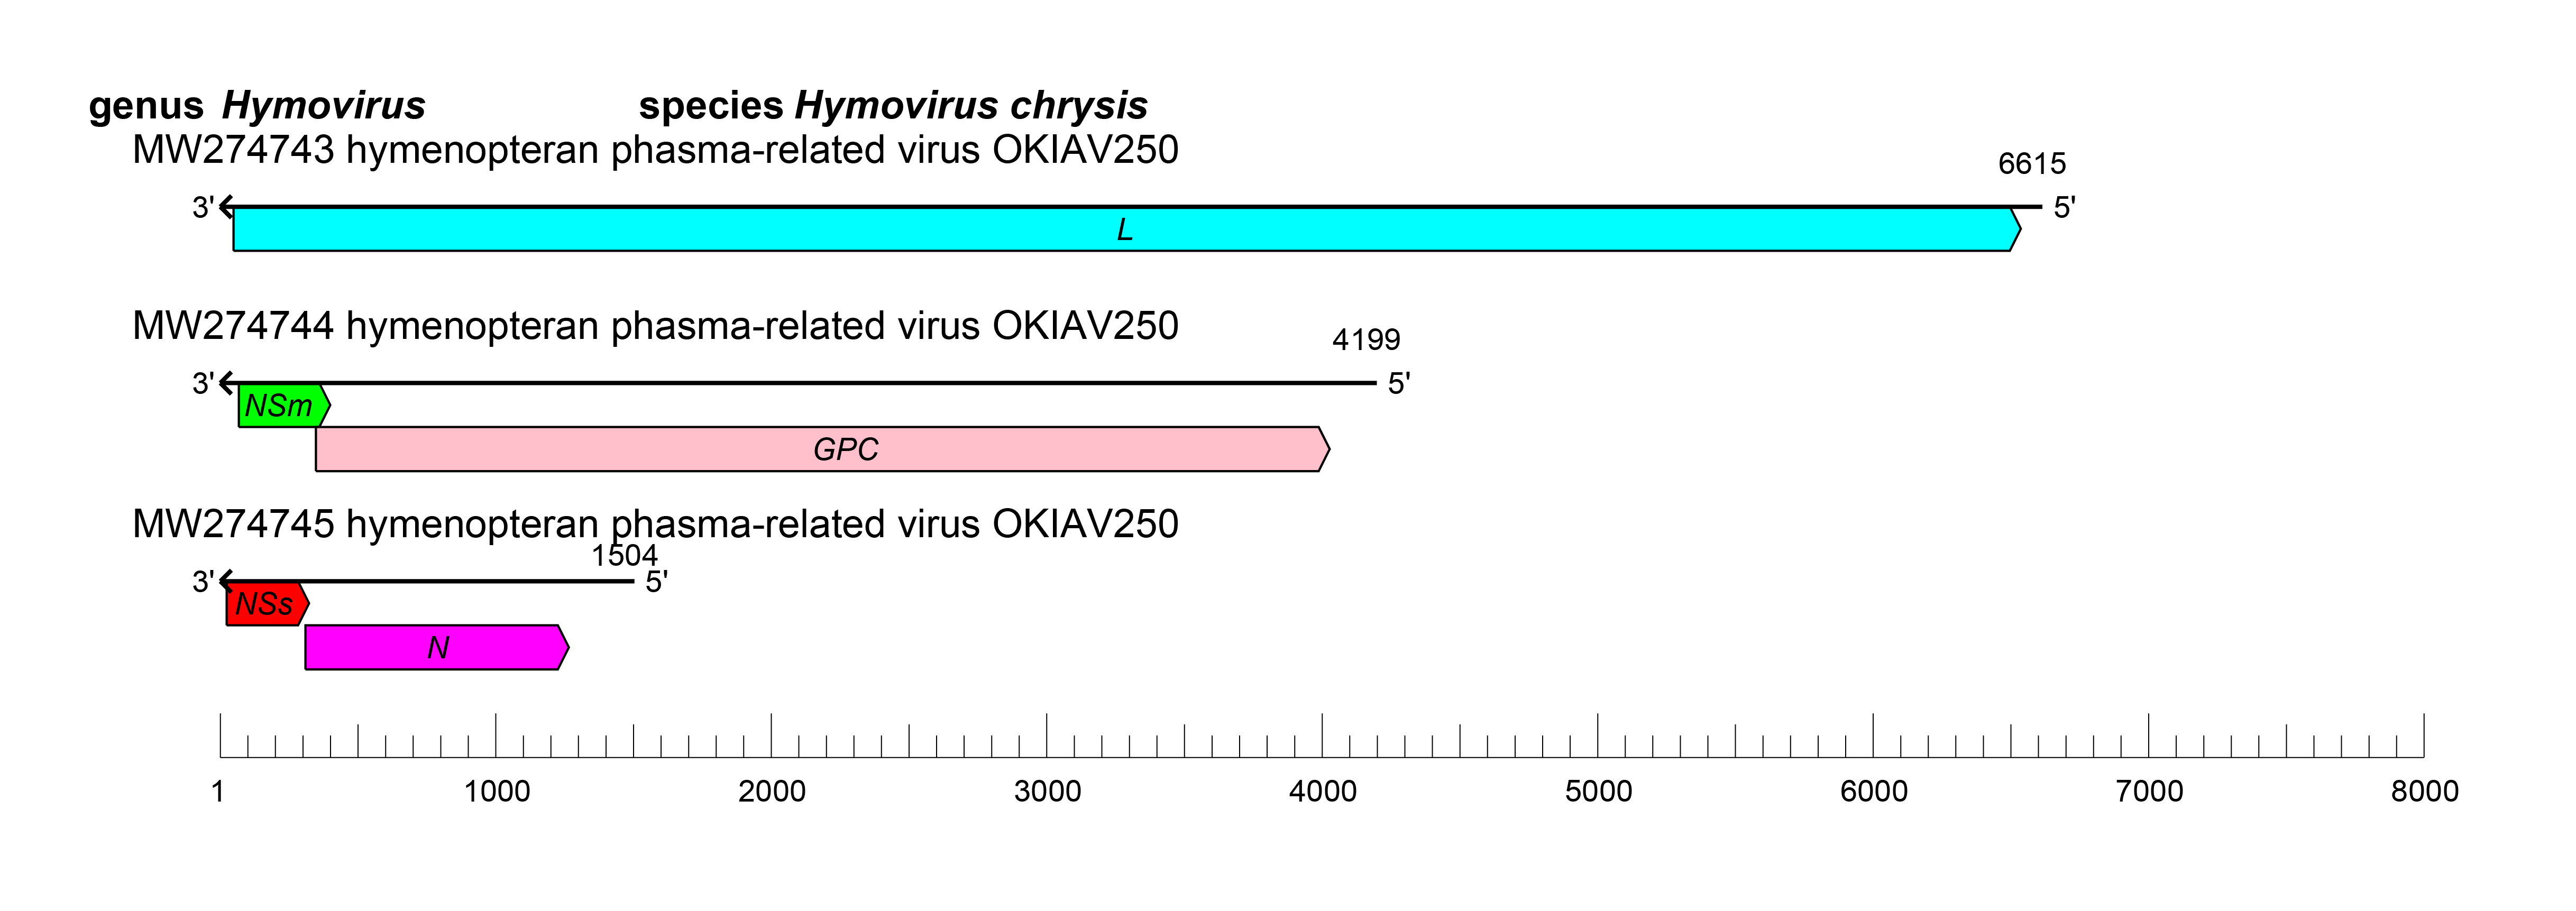 Hymovirus genome